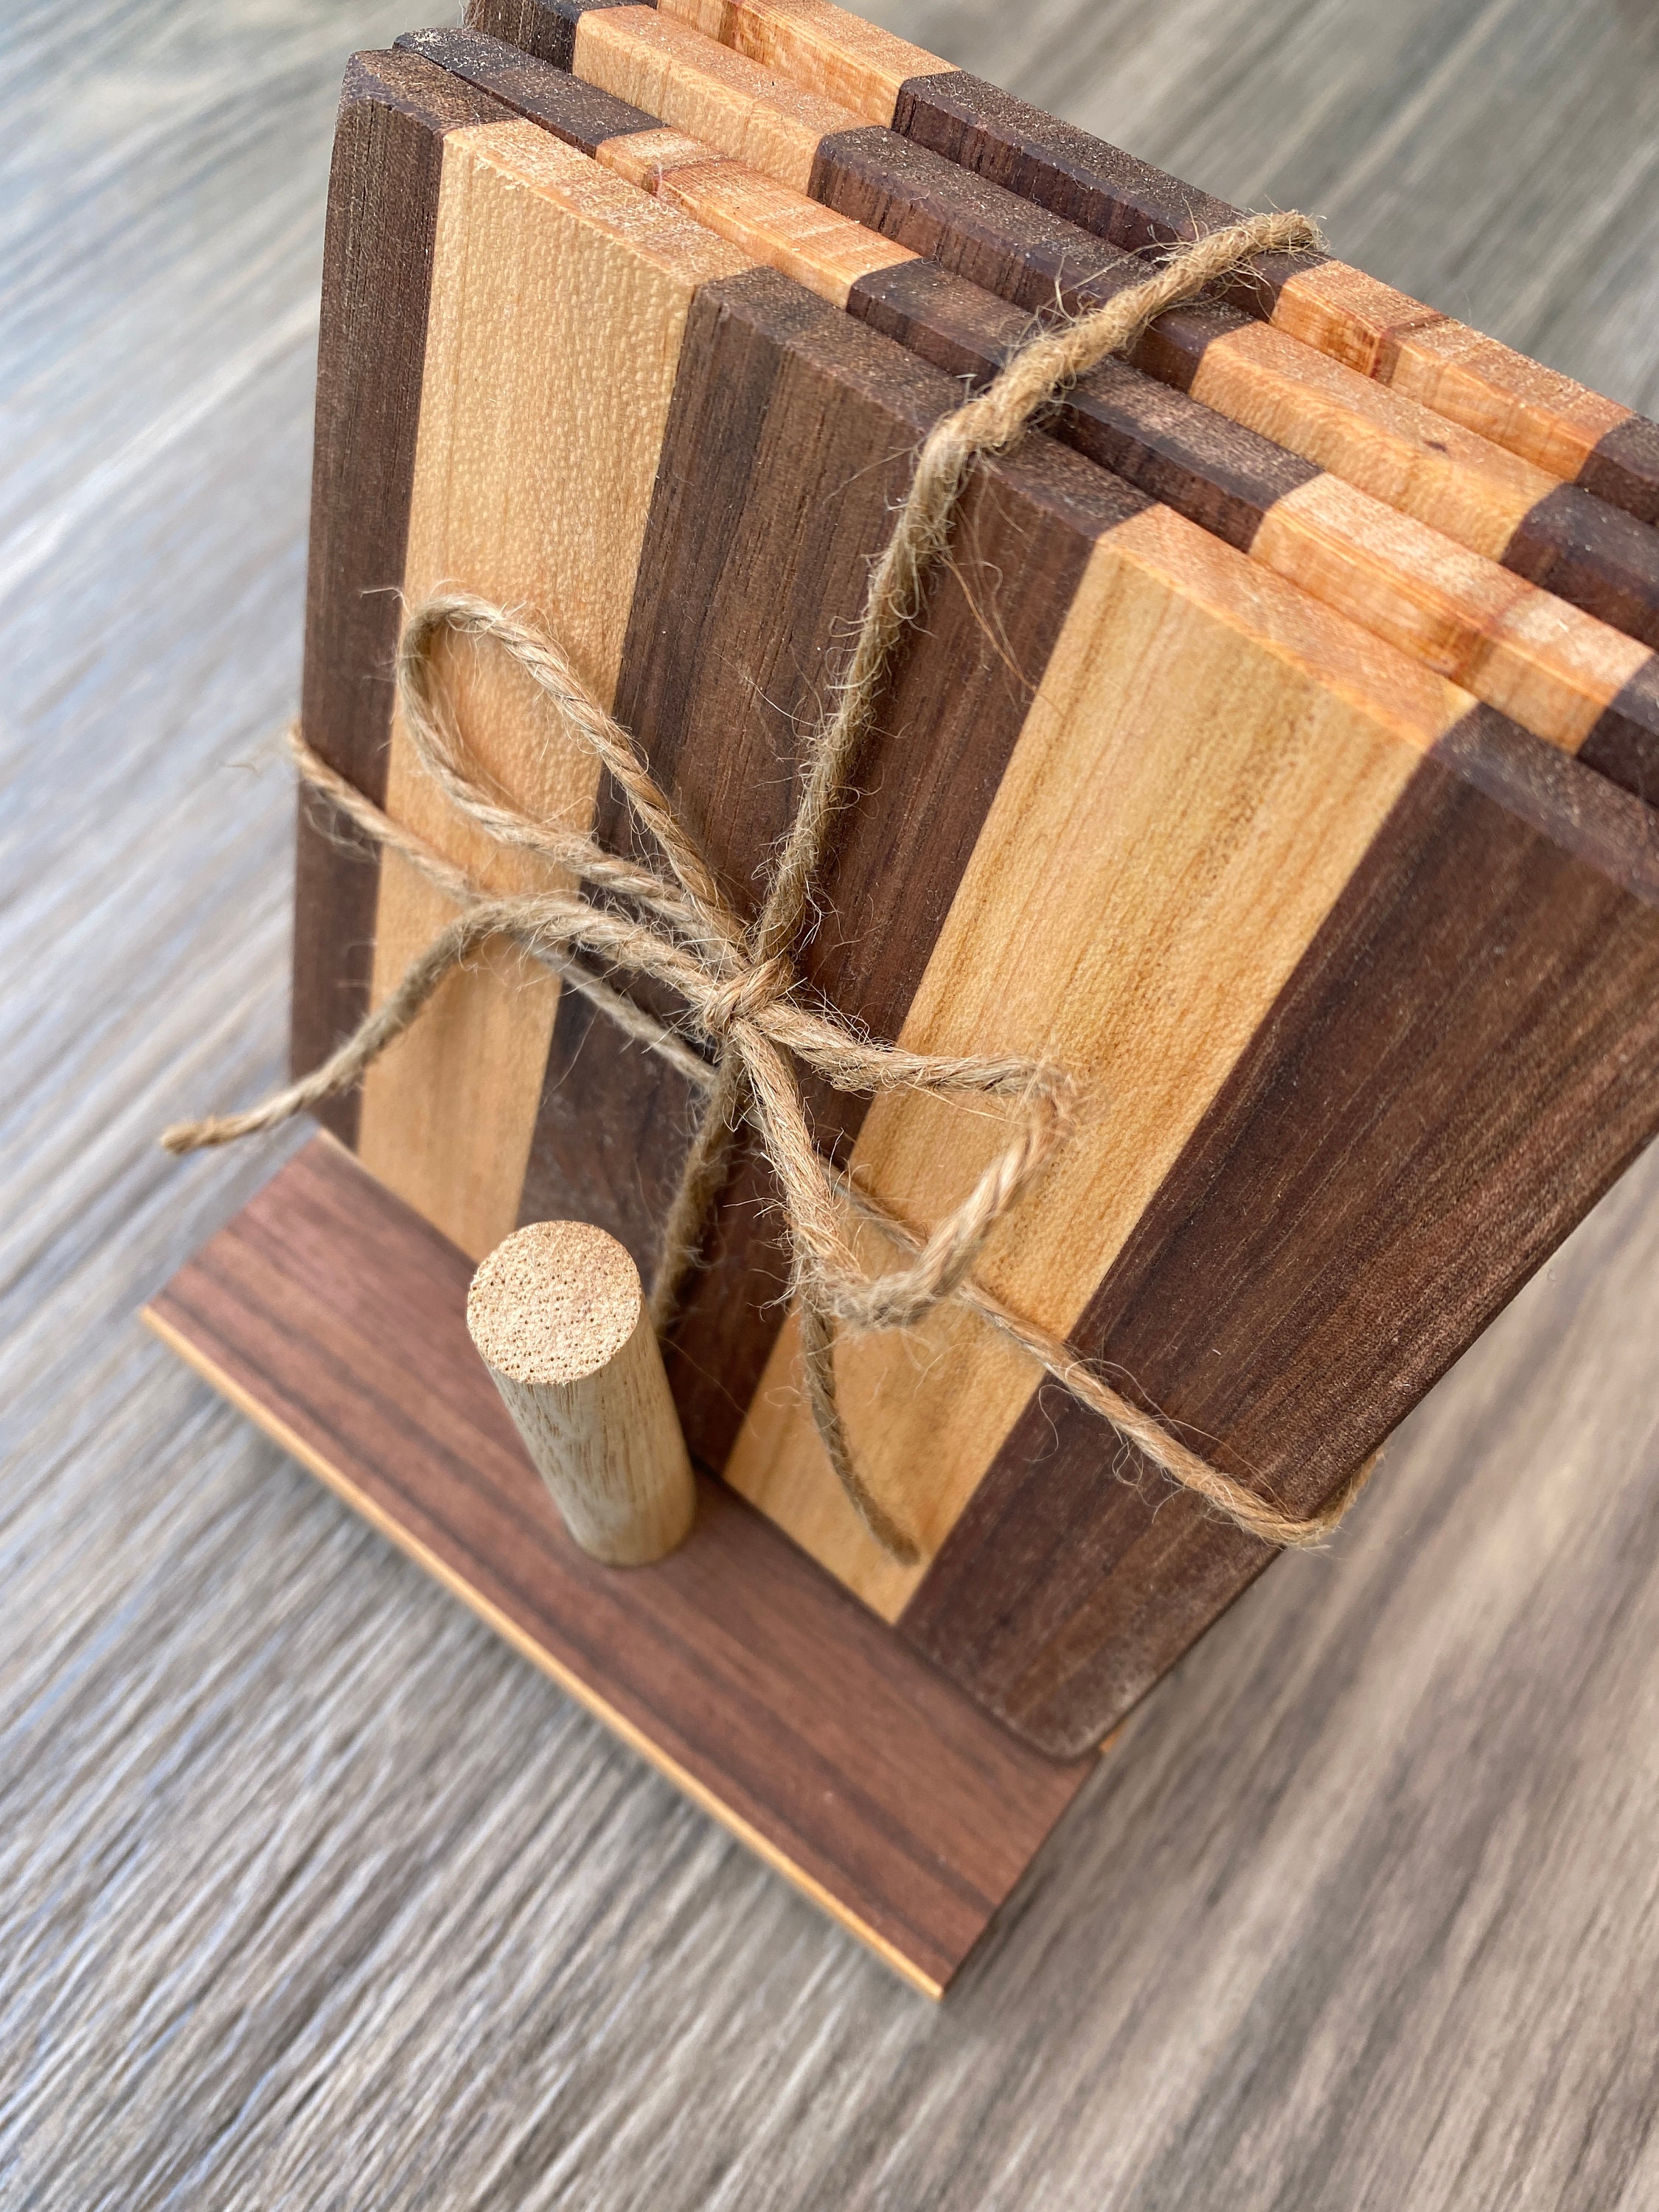 Upright Wood Coaster Holder - Arizona Gifts